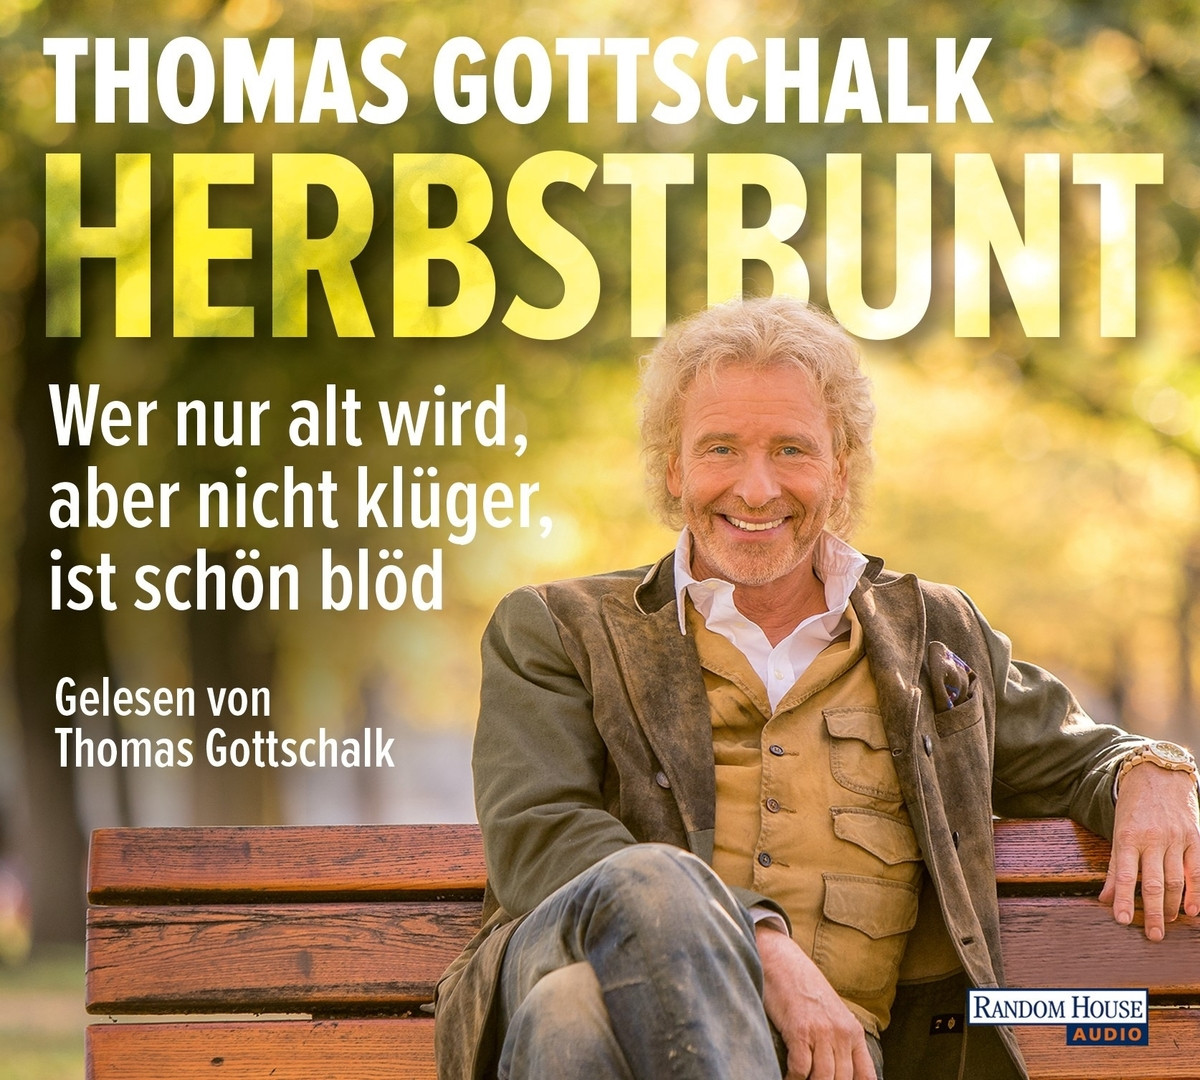 Thomas Gottschalk - Herbstbunt: Wer nur alt wird, aber nicht klüger, ist schön blöd